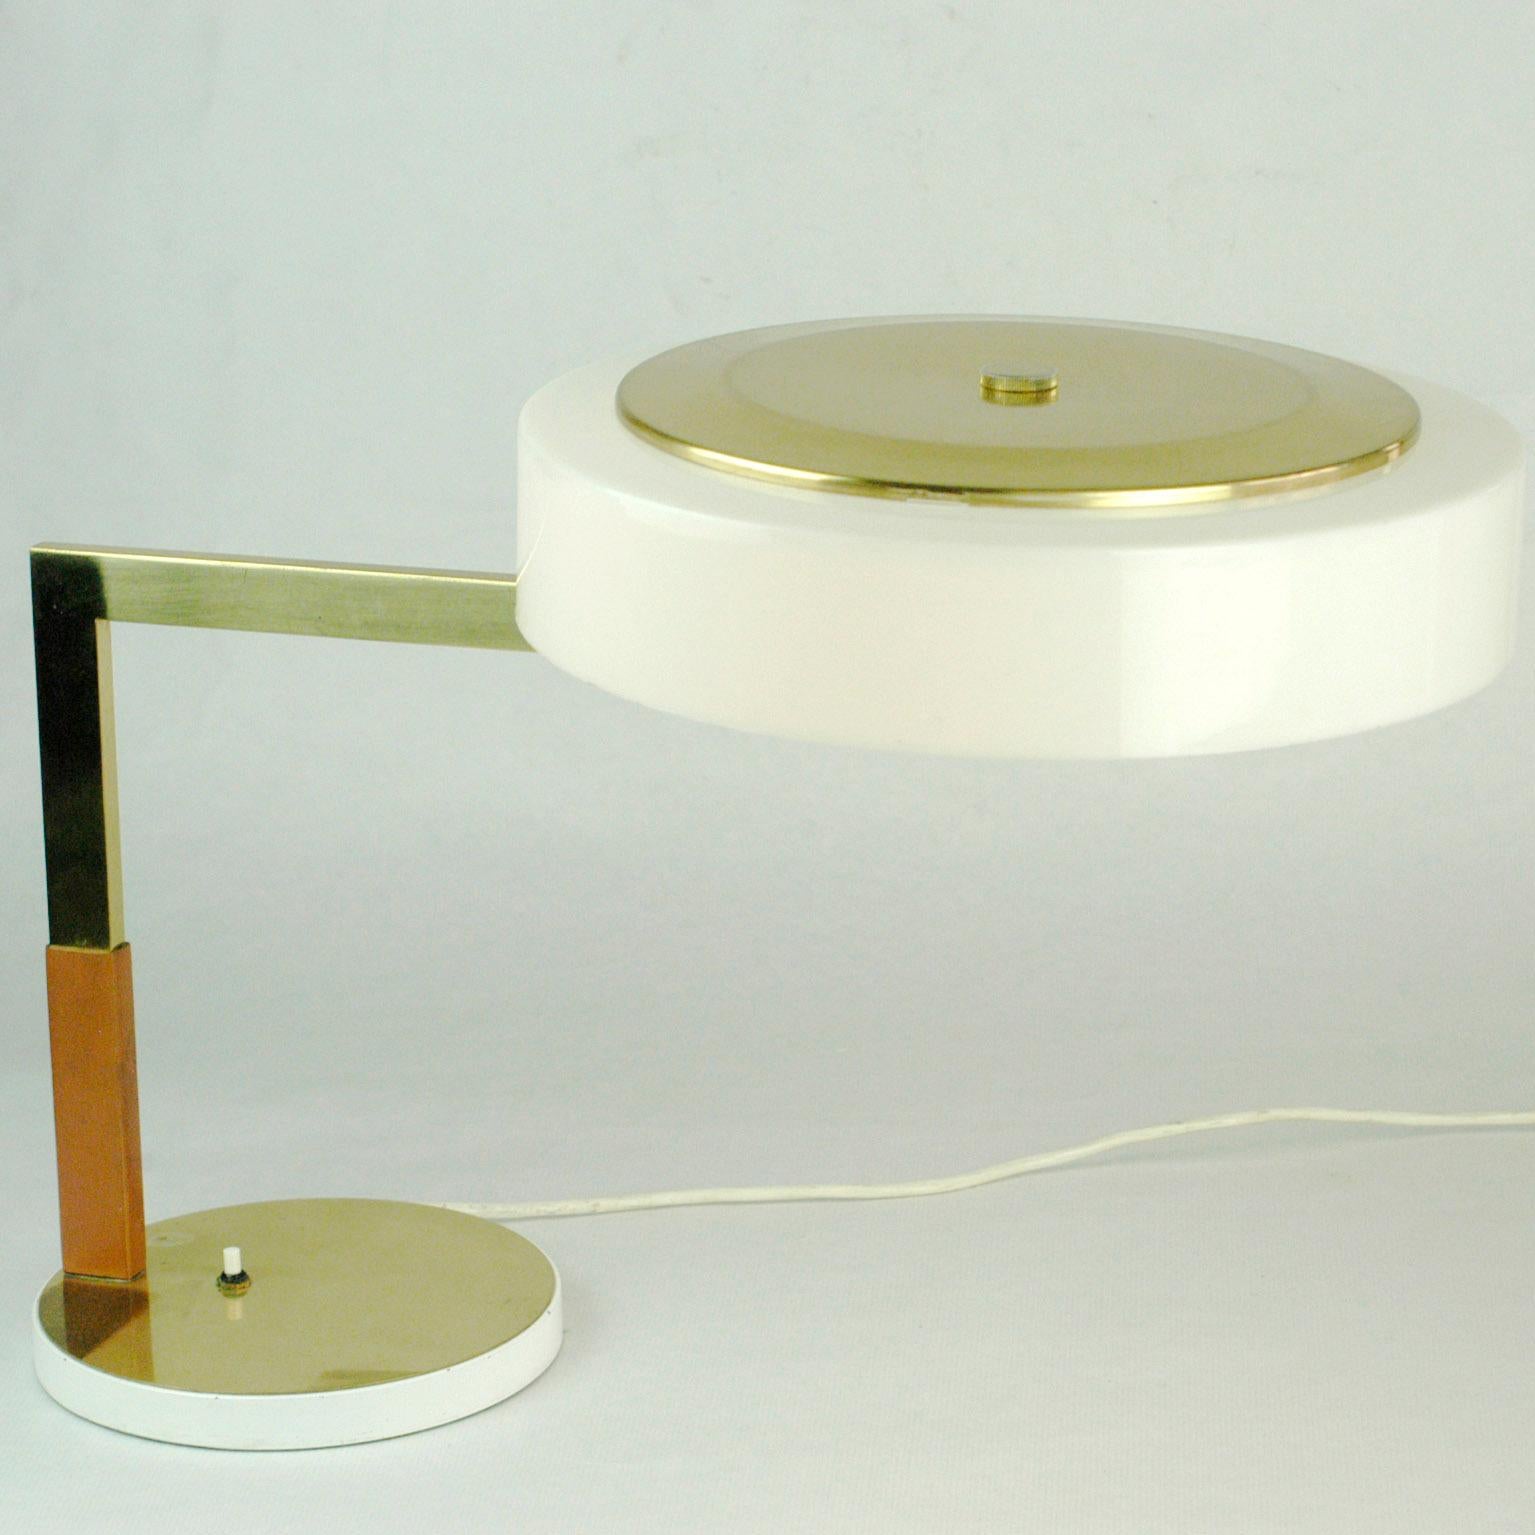 Diese ausgezeichnete österreichische Midcentury-Schreibtischlampe mit verstellbarem Schirm wurde von J.T. entworfen und hergestellt. Kalmar Wien in den 1960er Jahren. Sie bietet  einem Messingstiel mit Leder und einem verstellbaren Acrylschirm. Sie